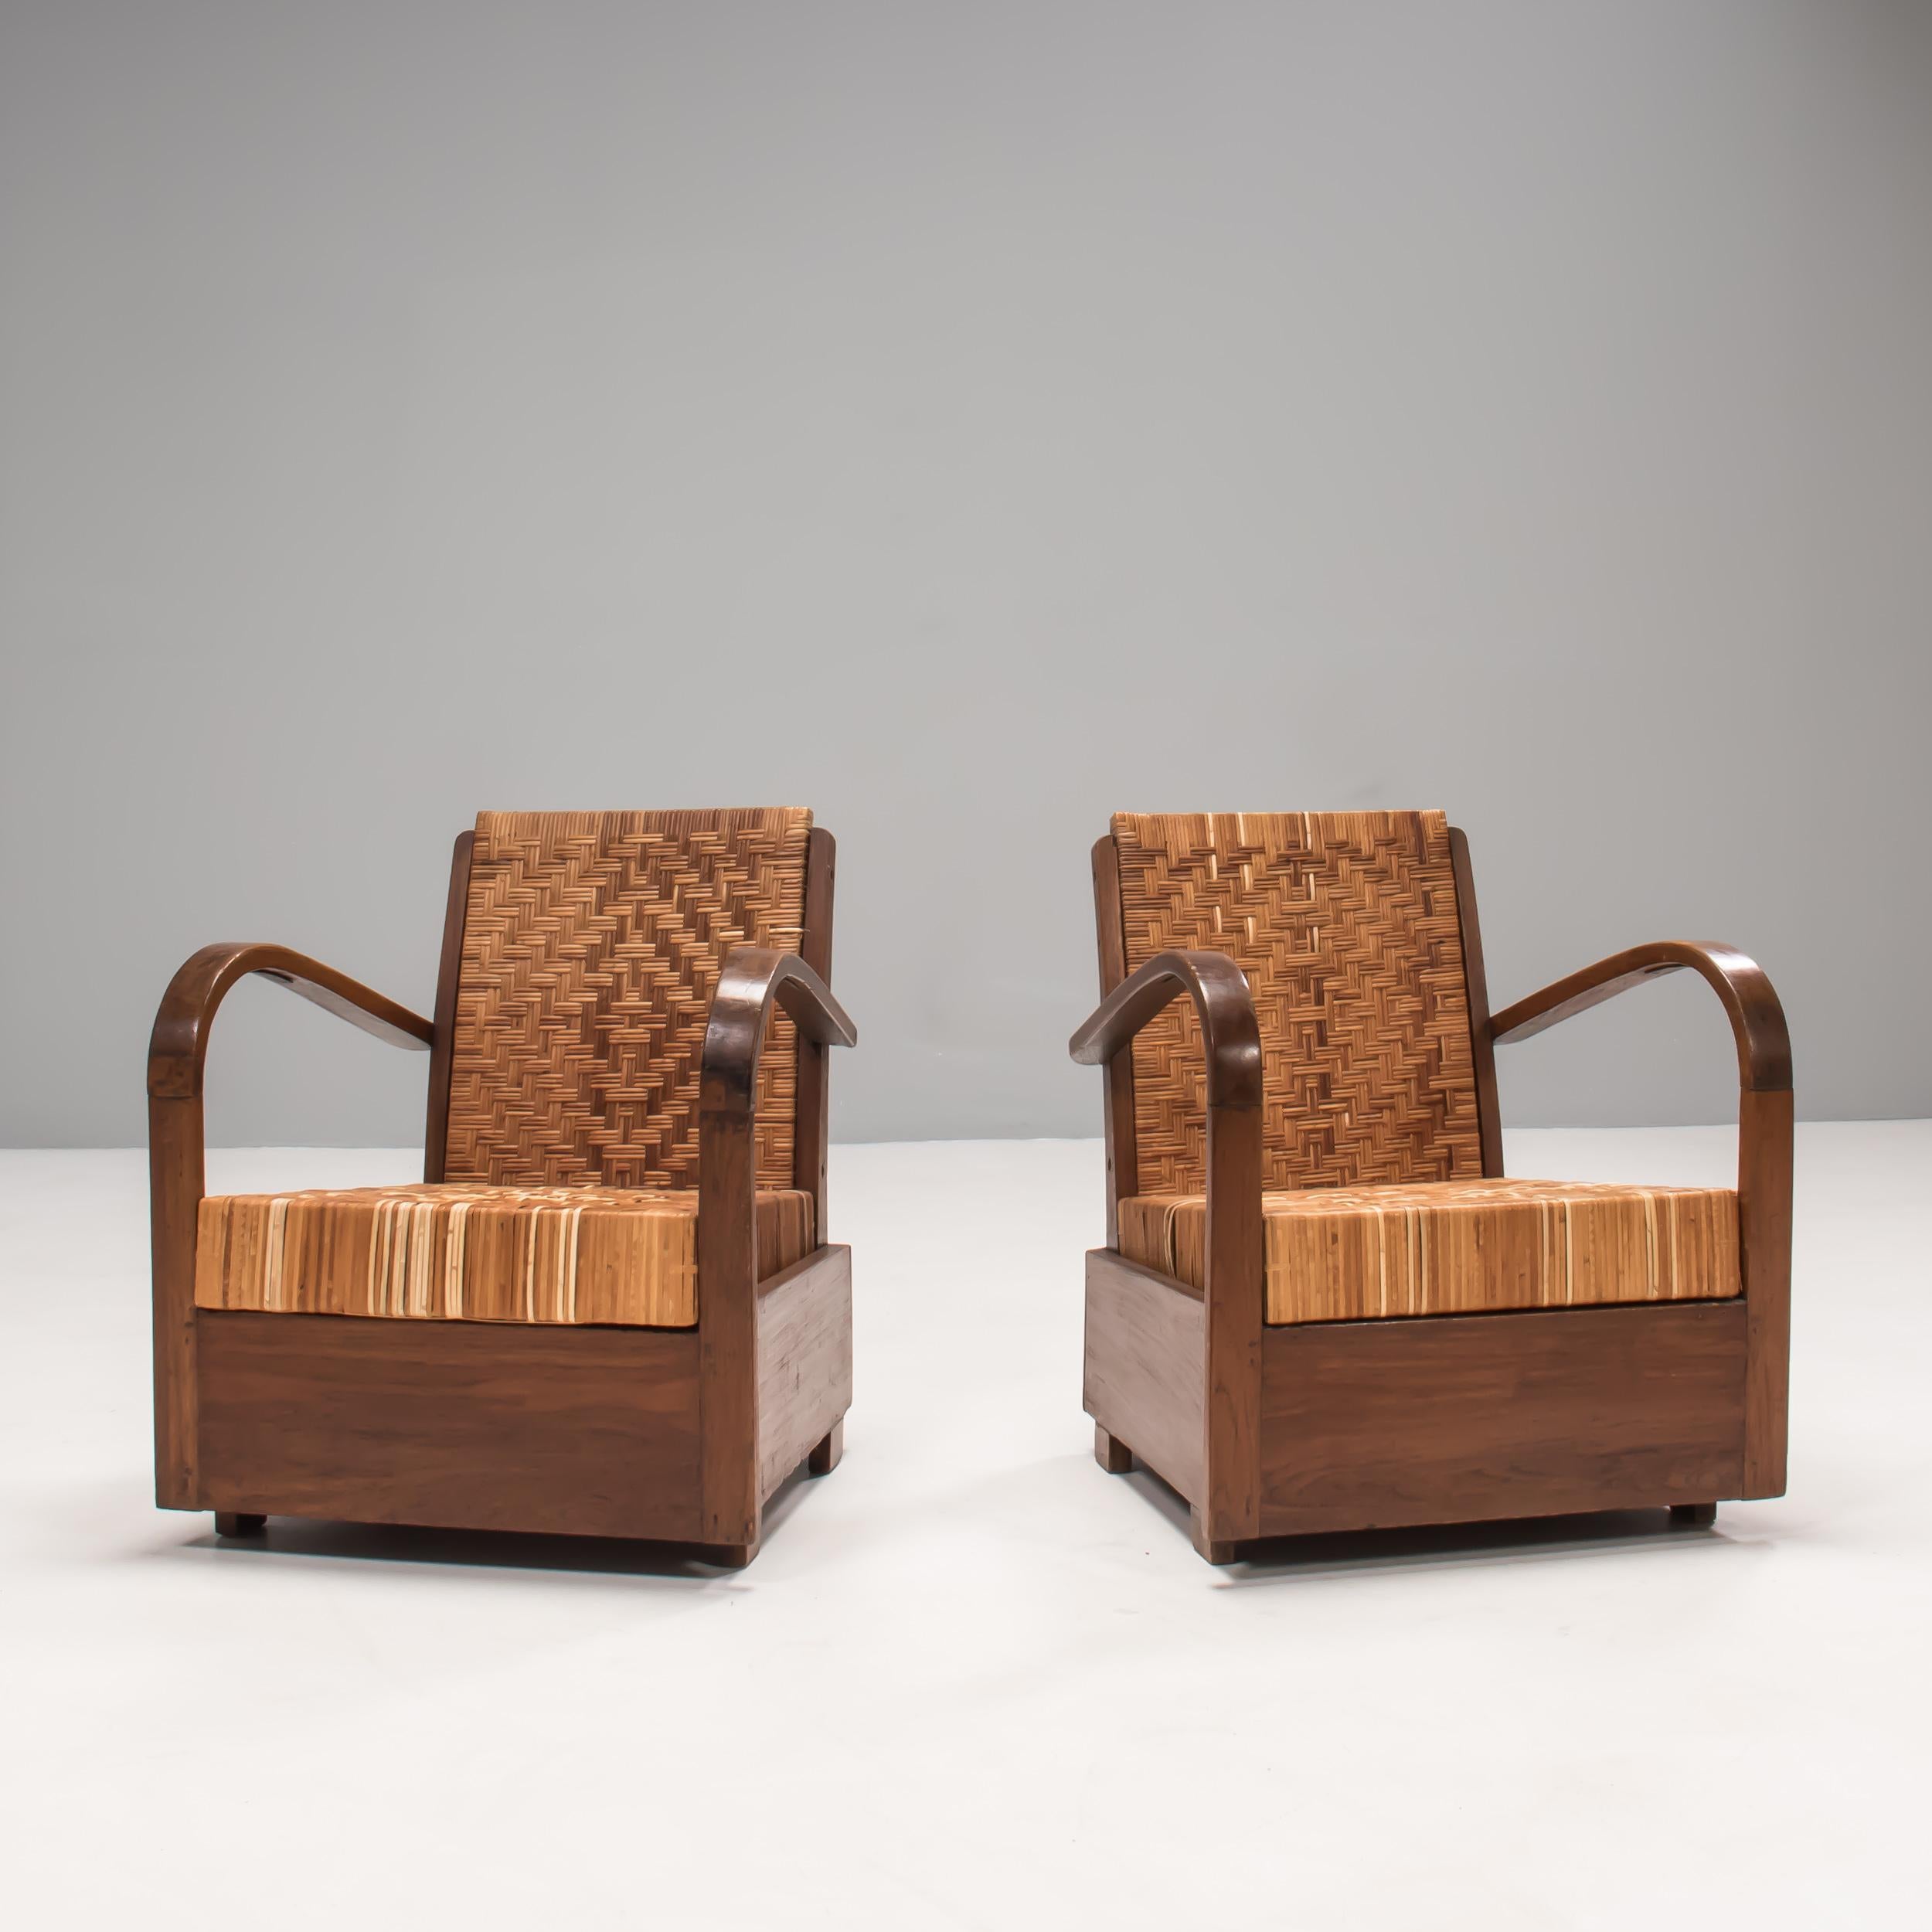 Une très belle paire de fauteuils Art Deco, conçus dans le style colonial.

Avec une base en bois de teck et des accoudoirs en bois courbé, les sièges et les dossiers sont recouverts de canne, avec un motif à chevrons pour l'un et à losanges pour